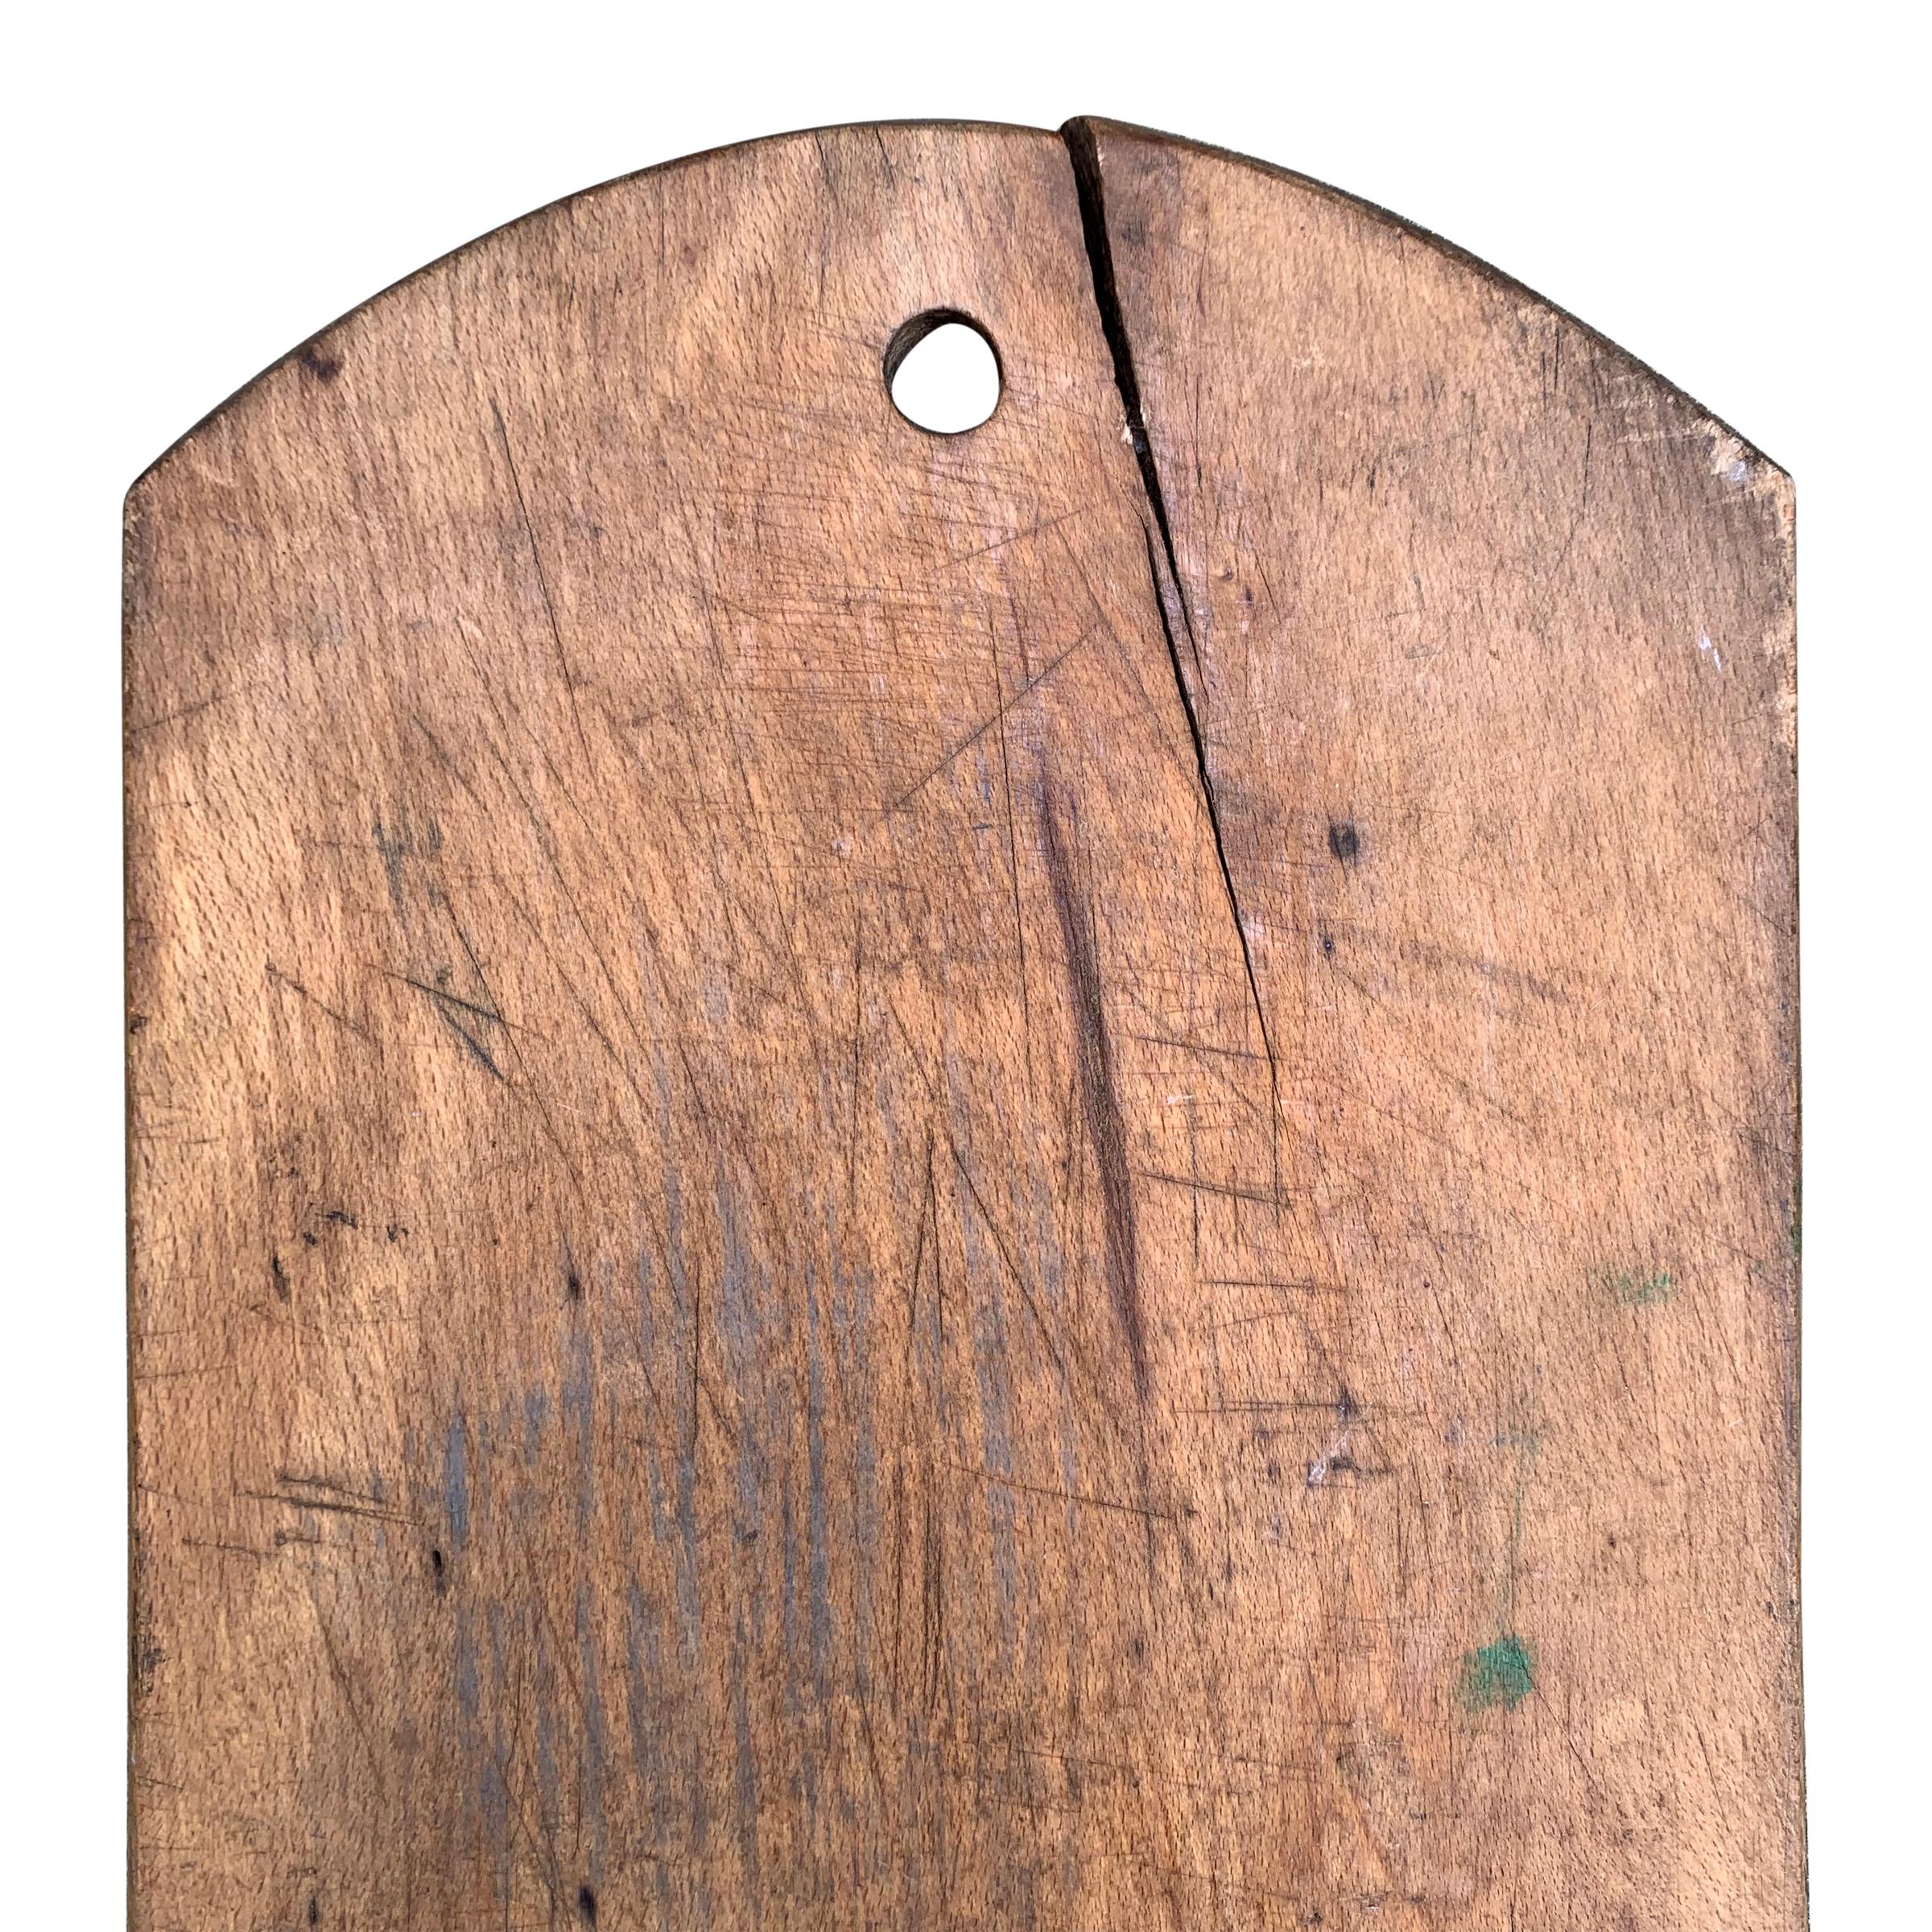 Rustic Early 20th Century Italian Cutting Board